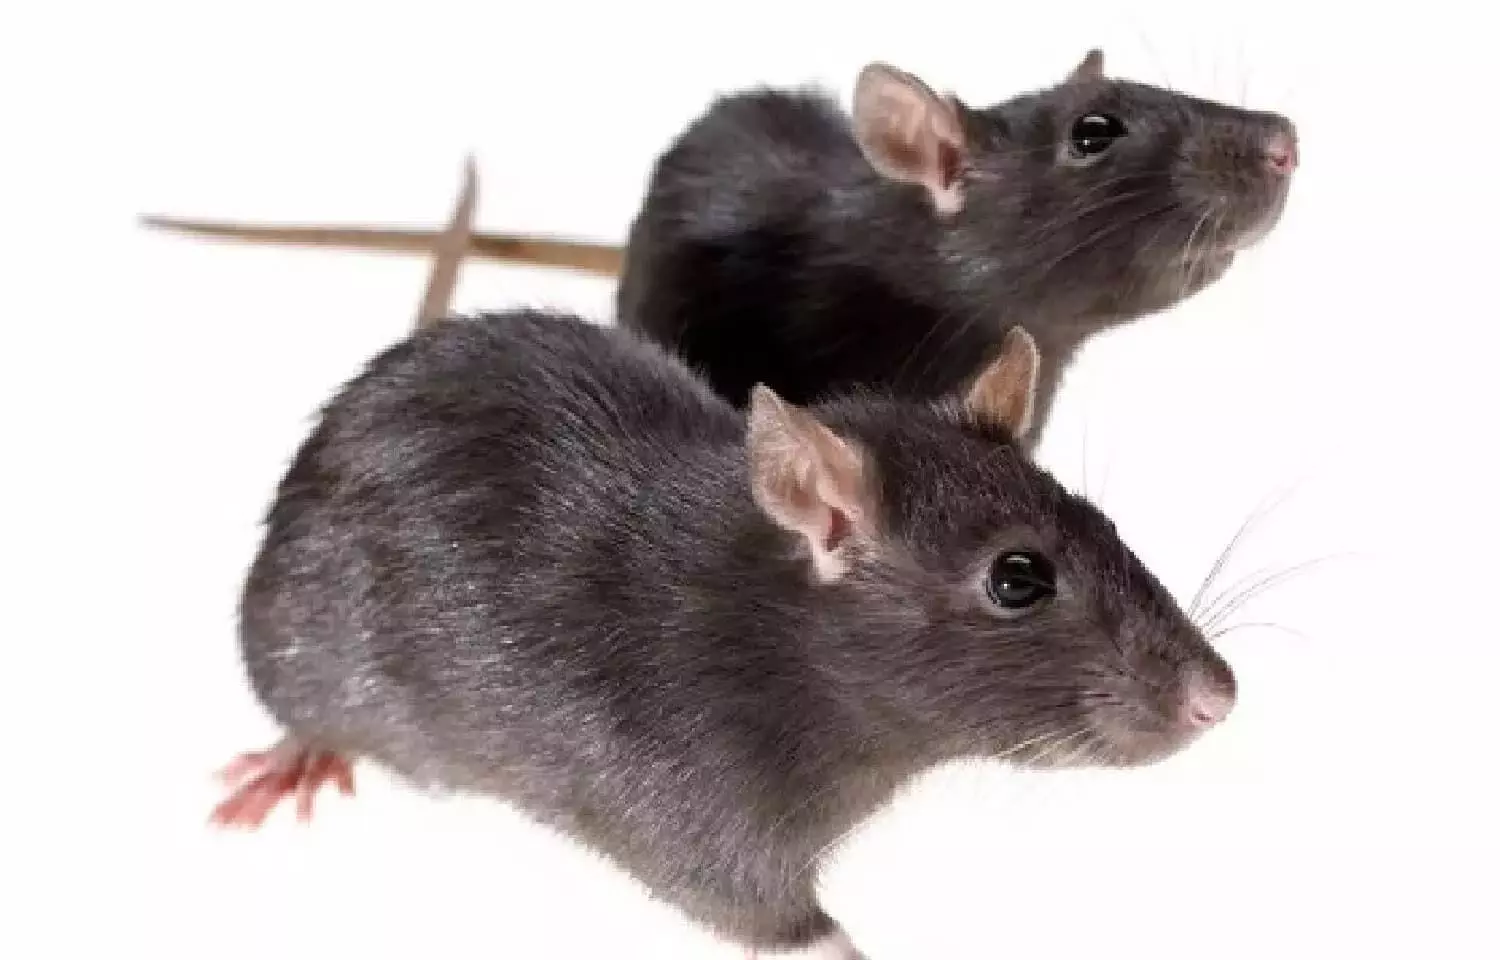 अगर घर में अचानक बढ़ने लगे बहुत सारे चूहे तो हो जाएं सावधान, नहीं तो होगा कुछ ऐसा